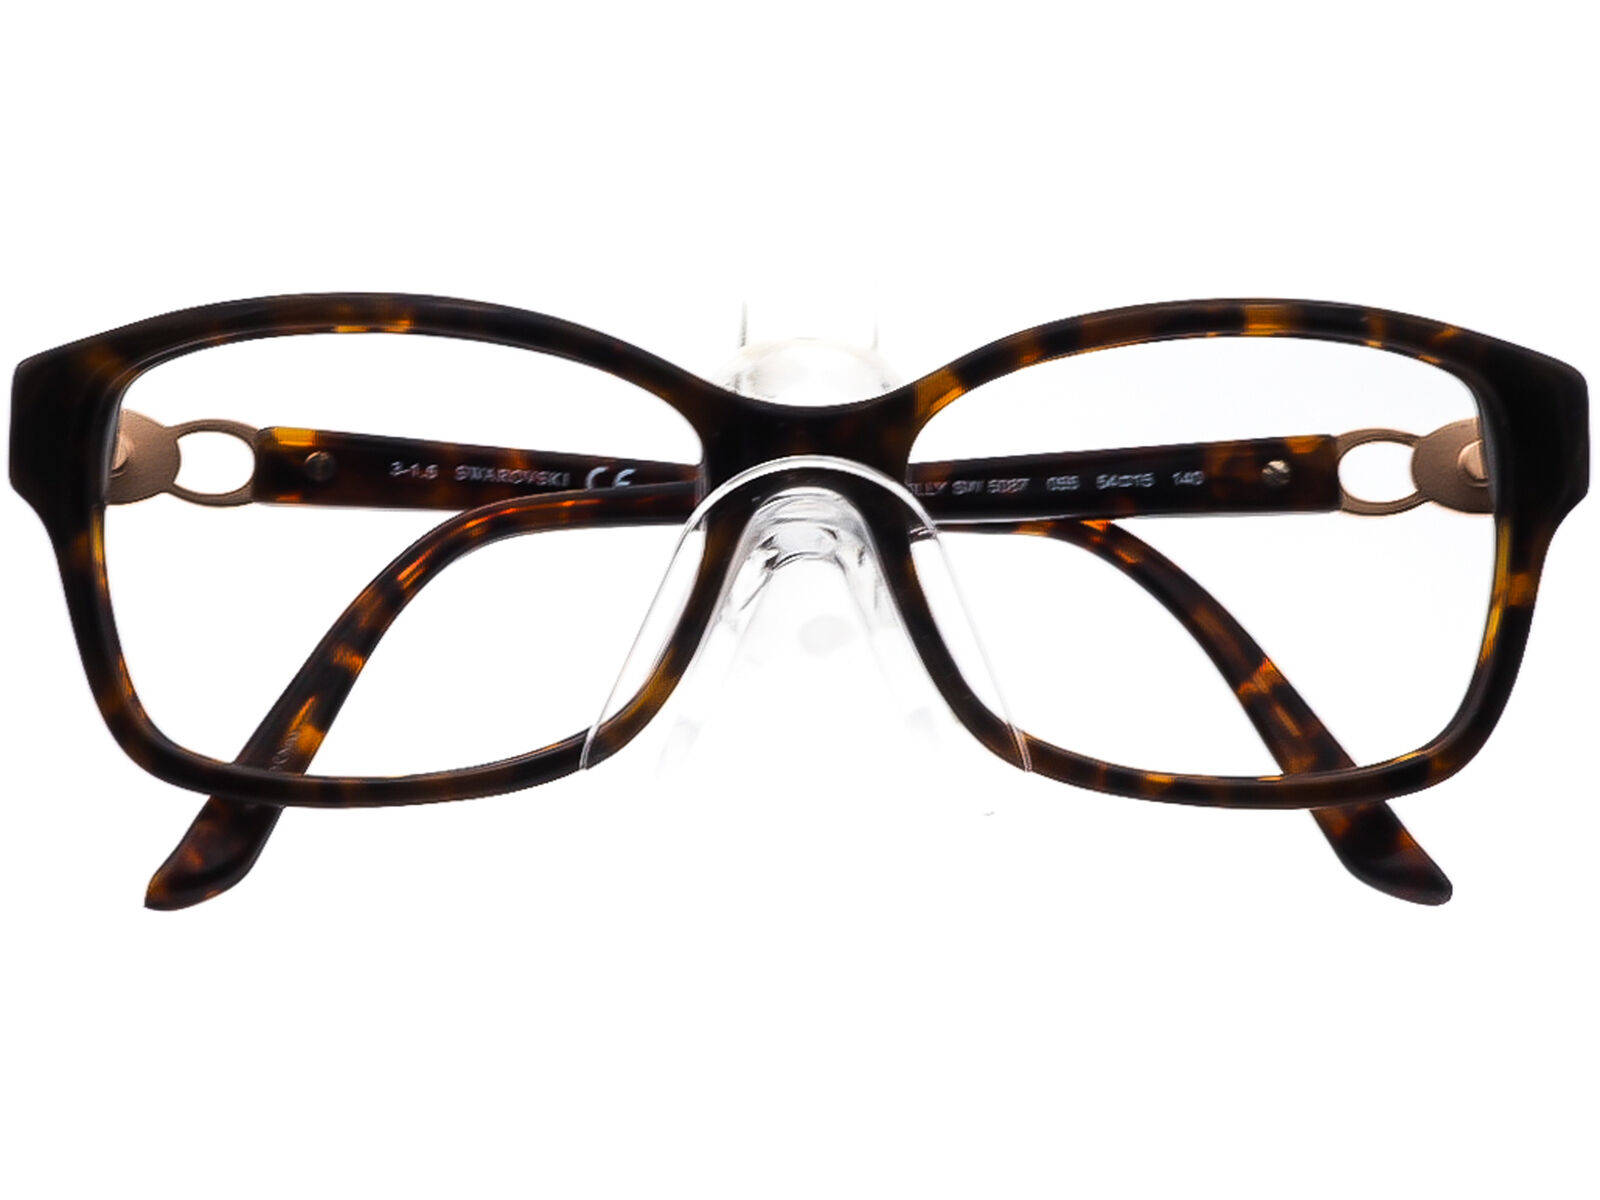 Swarovski Eyeglasses Tortoise Horn Rim Wallpaper